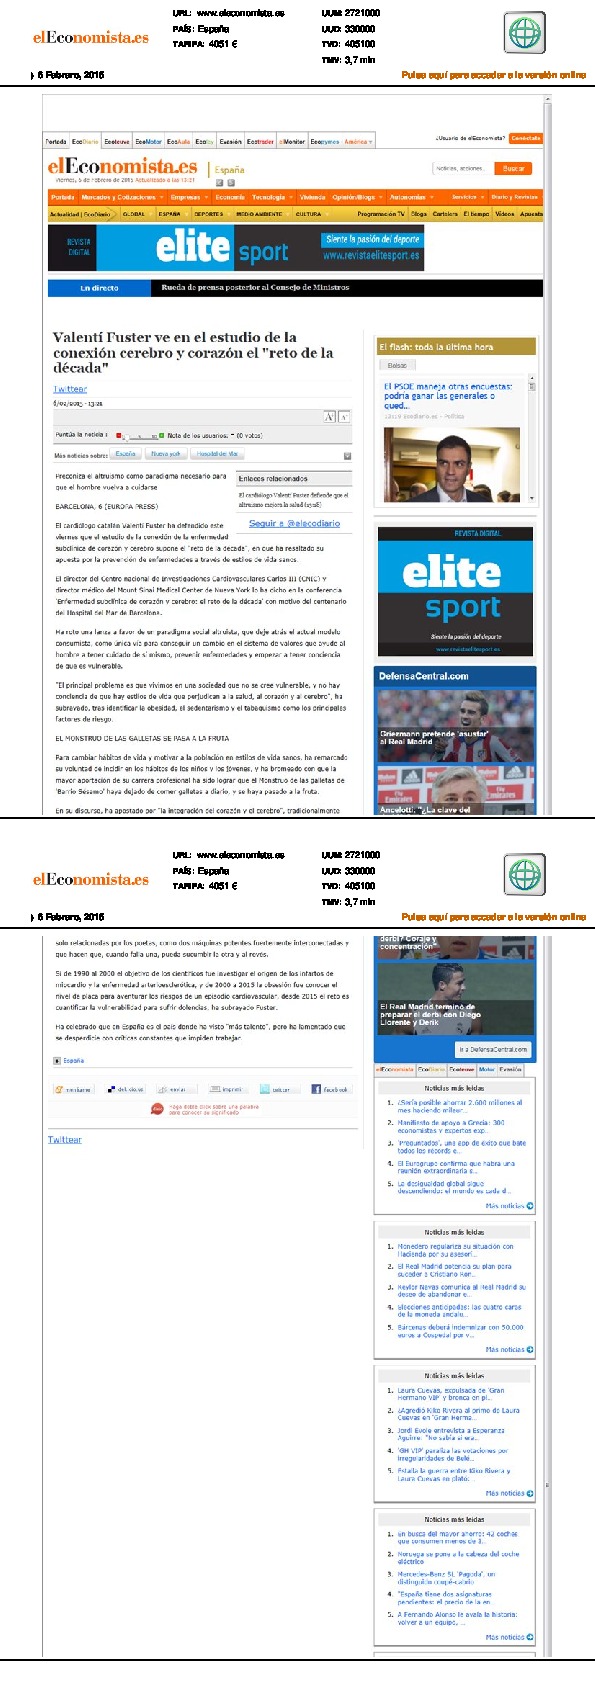 Image_1423753630_conferencia_valentifuster_el_economista.es